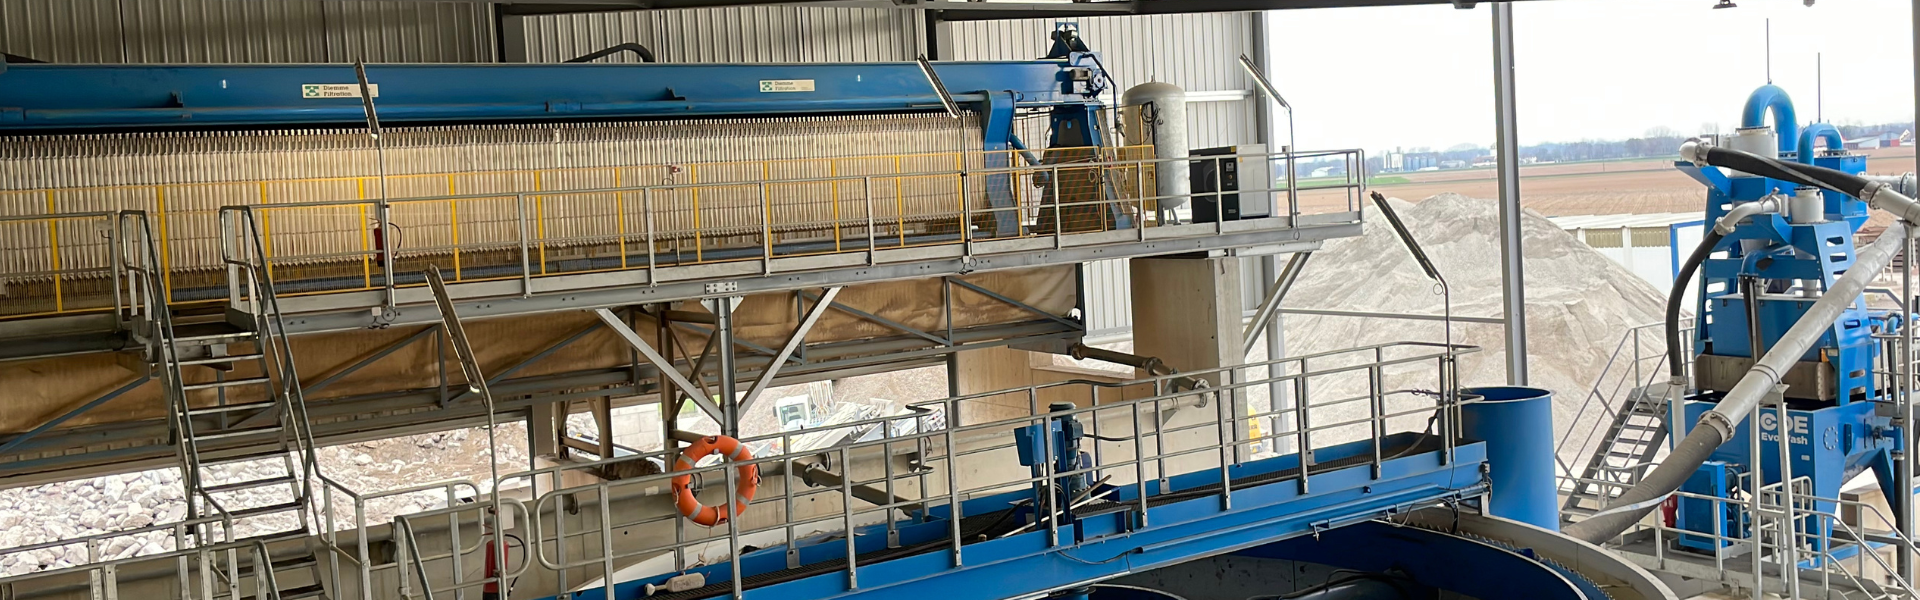 VVK Recyclage - Installation de revalorisation de déchets inertes de 80 t/h 